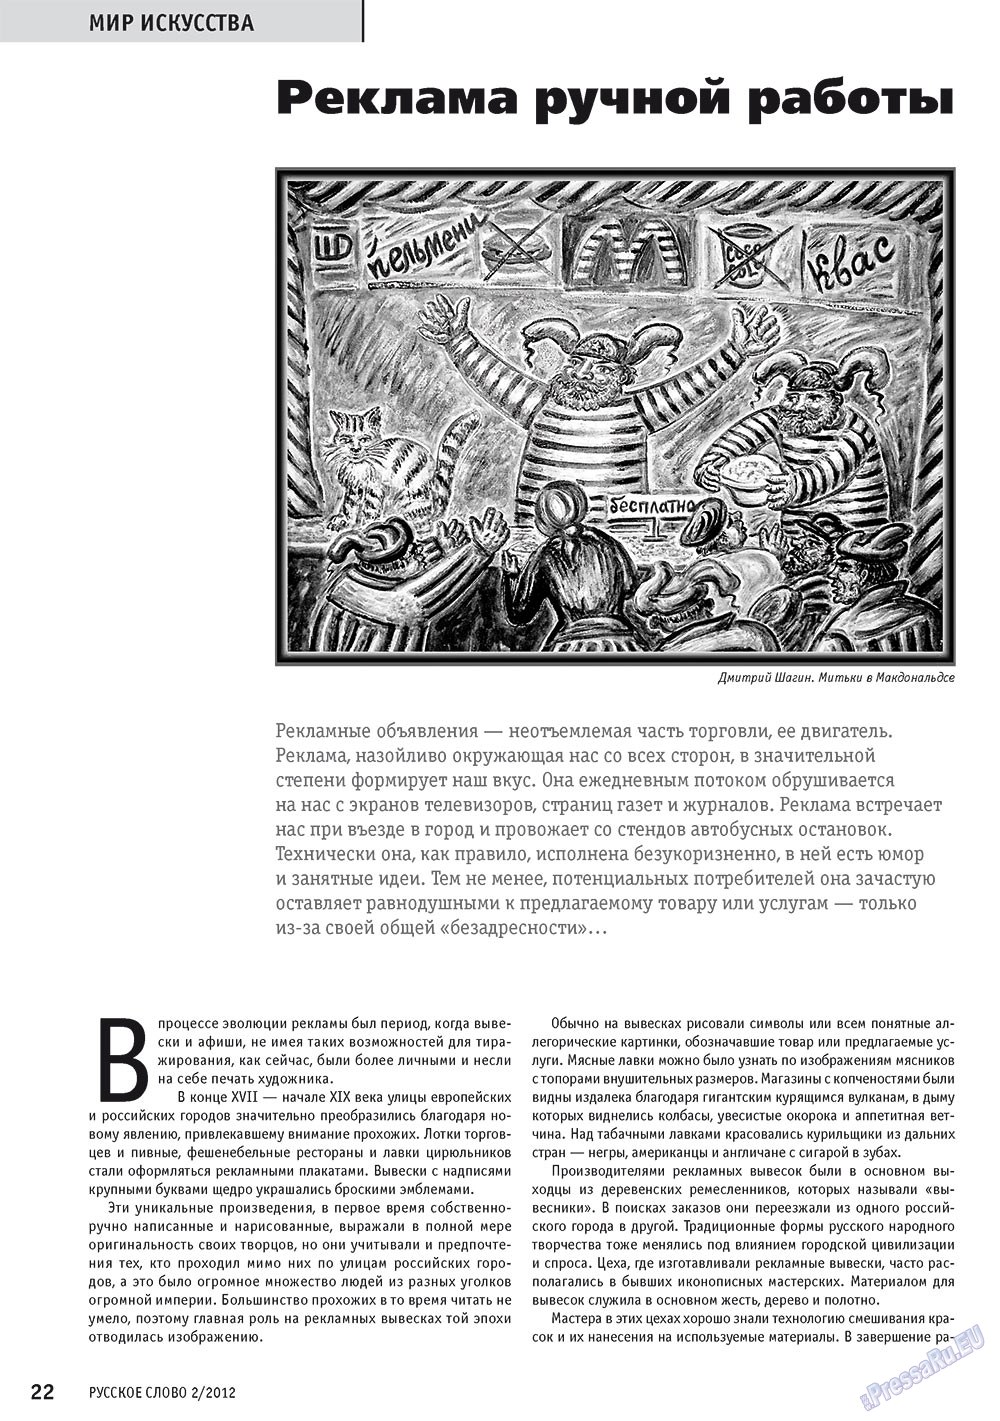 Русское слово, журнал. 2012 №2 стр.24